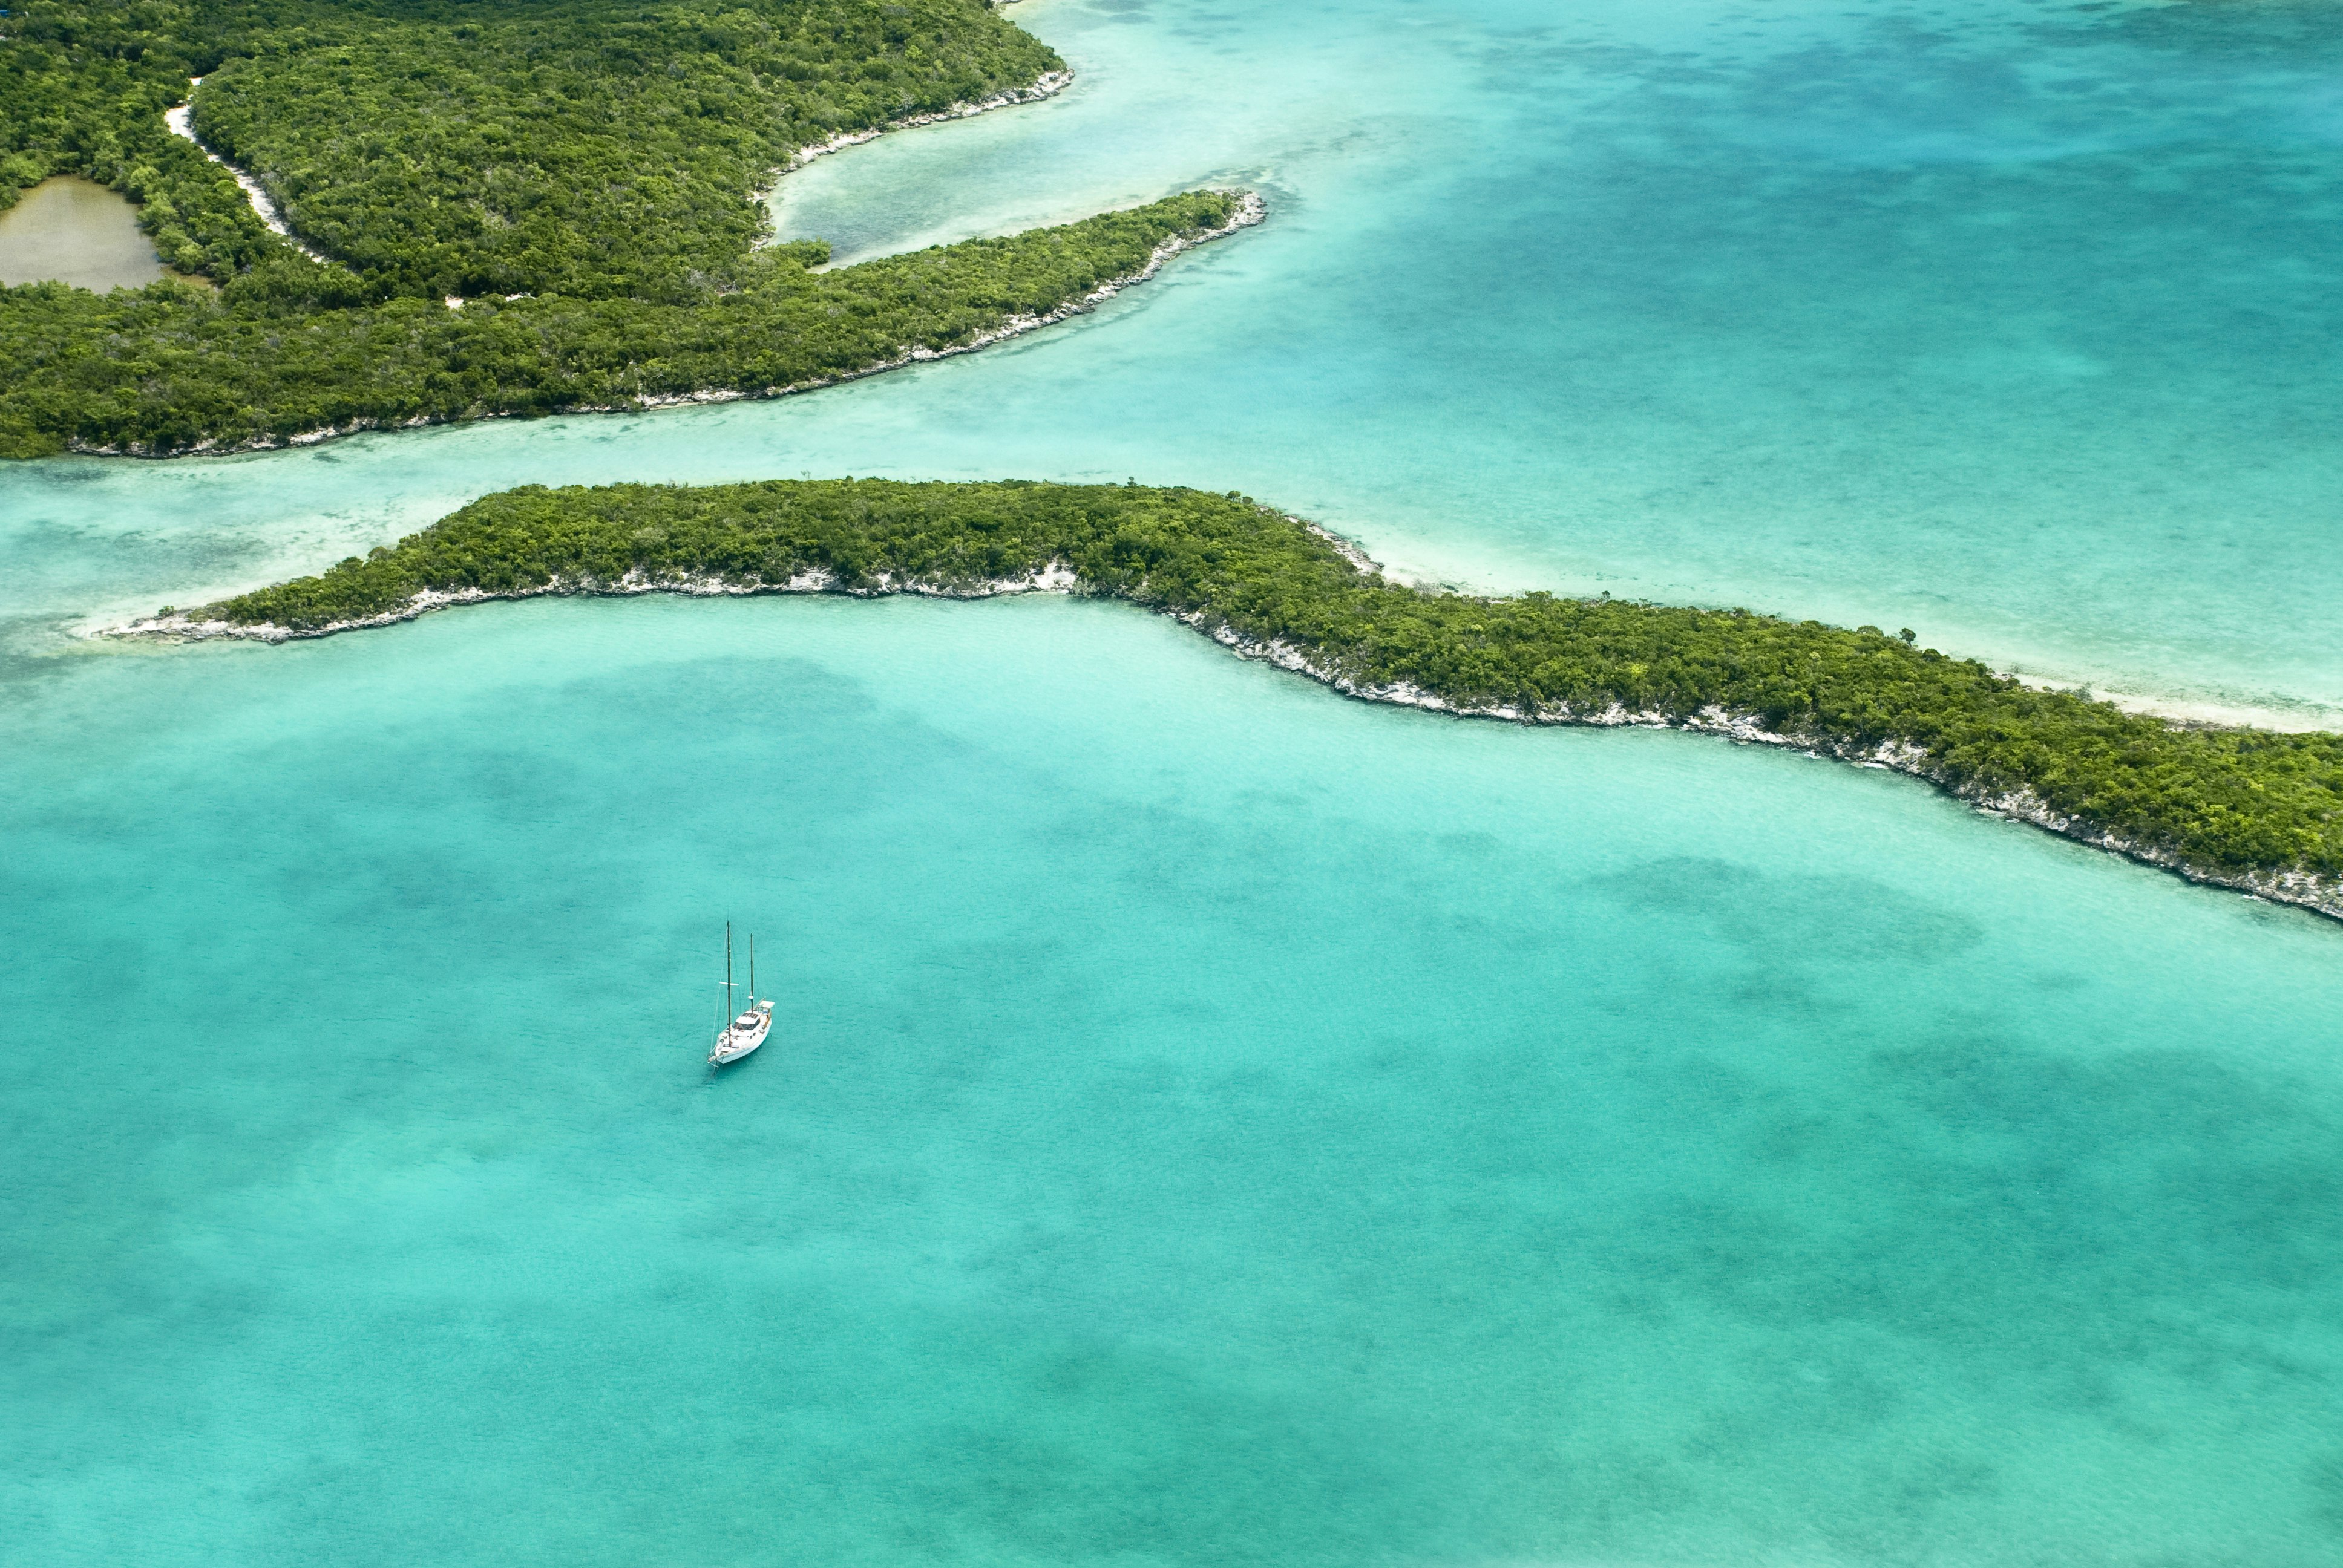 Vista a volo d'uccello di una parte delle Bahamas, barca a vela, spiagge